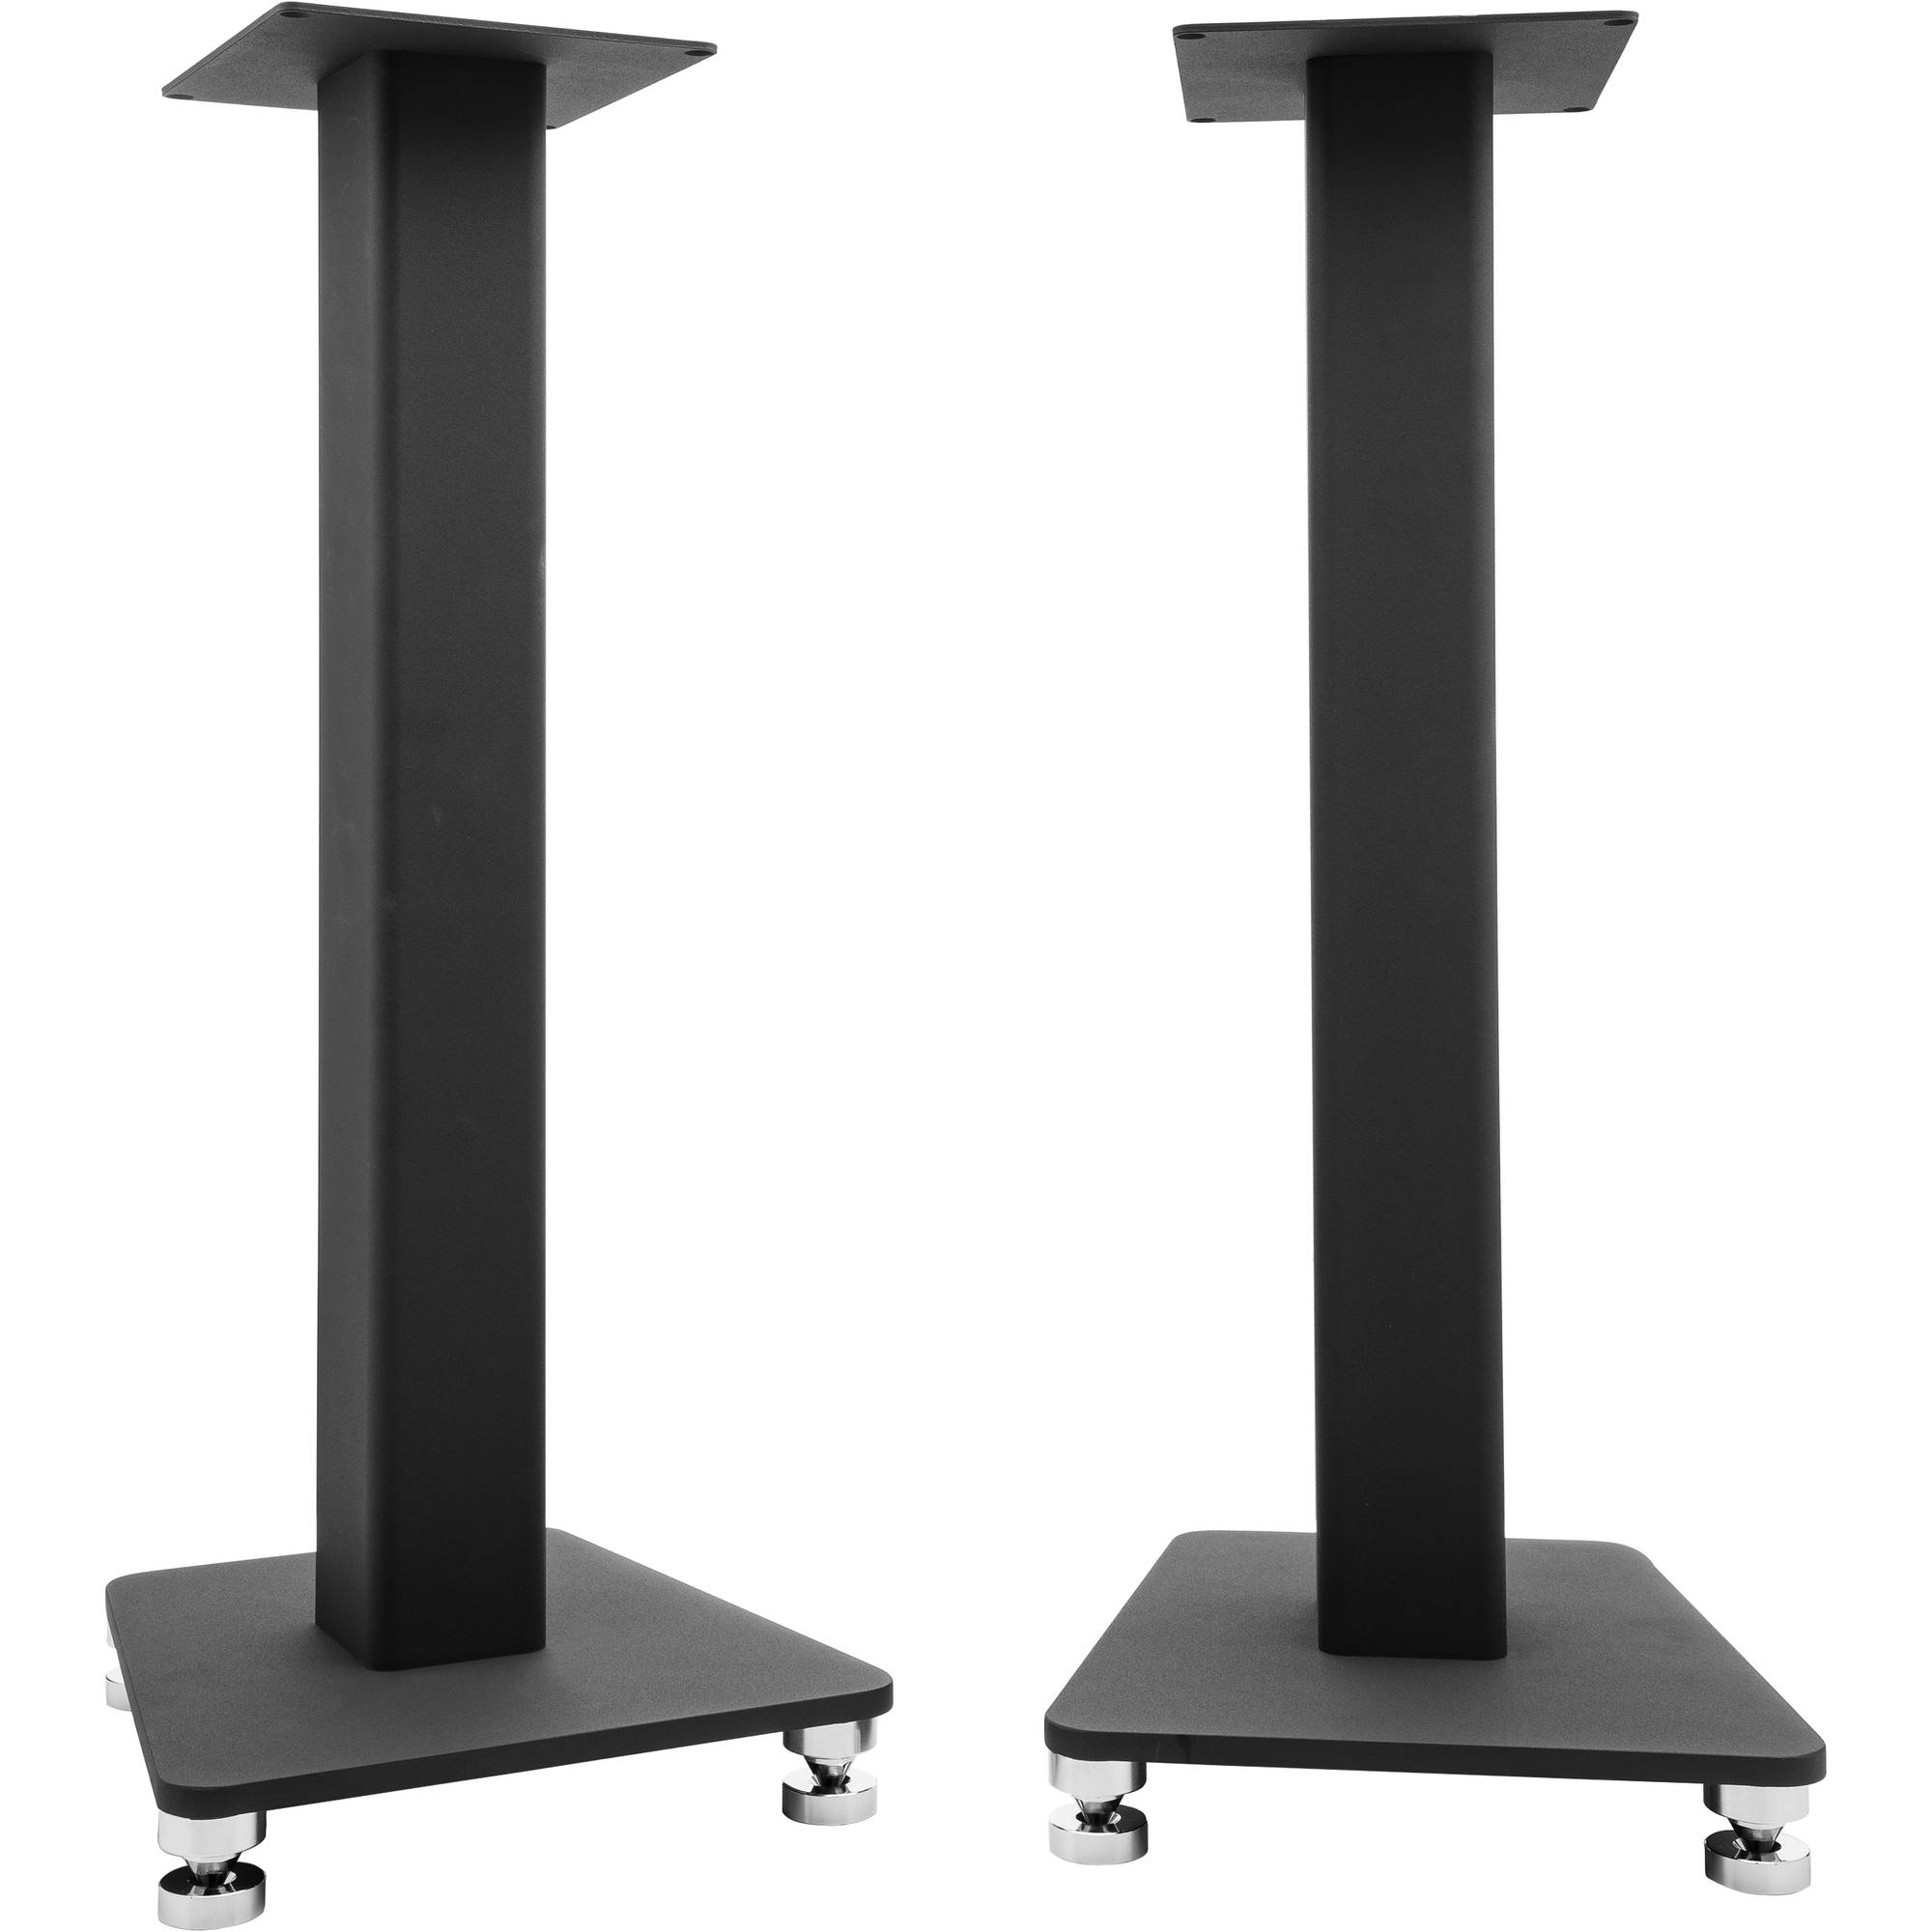 ELAC LS 80 Speaker Stands (pair)